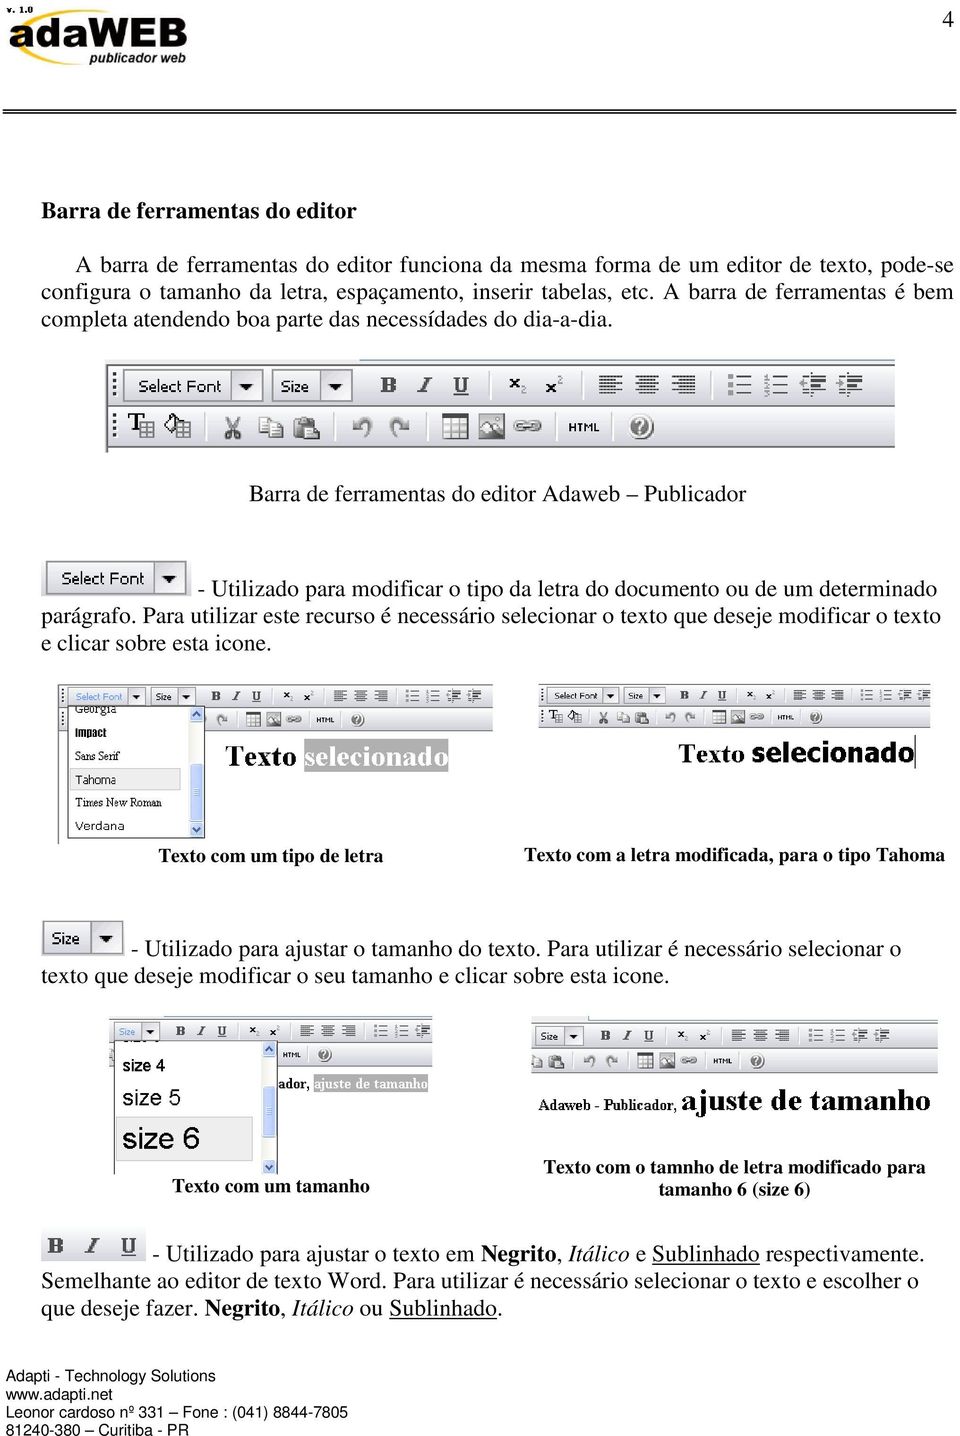 Barra de ferramentas do editor Adaweb Publicador - Utilizado para modificar o tipo da letra do documento ou de um determinado parágrafo.